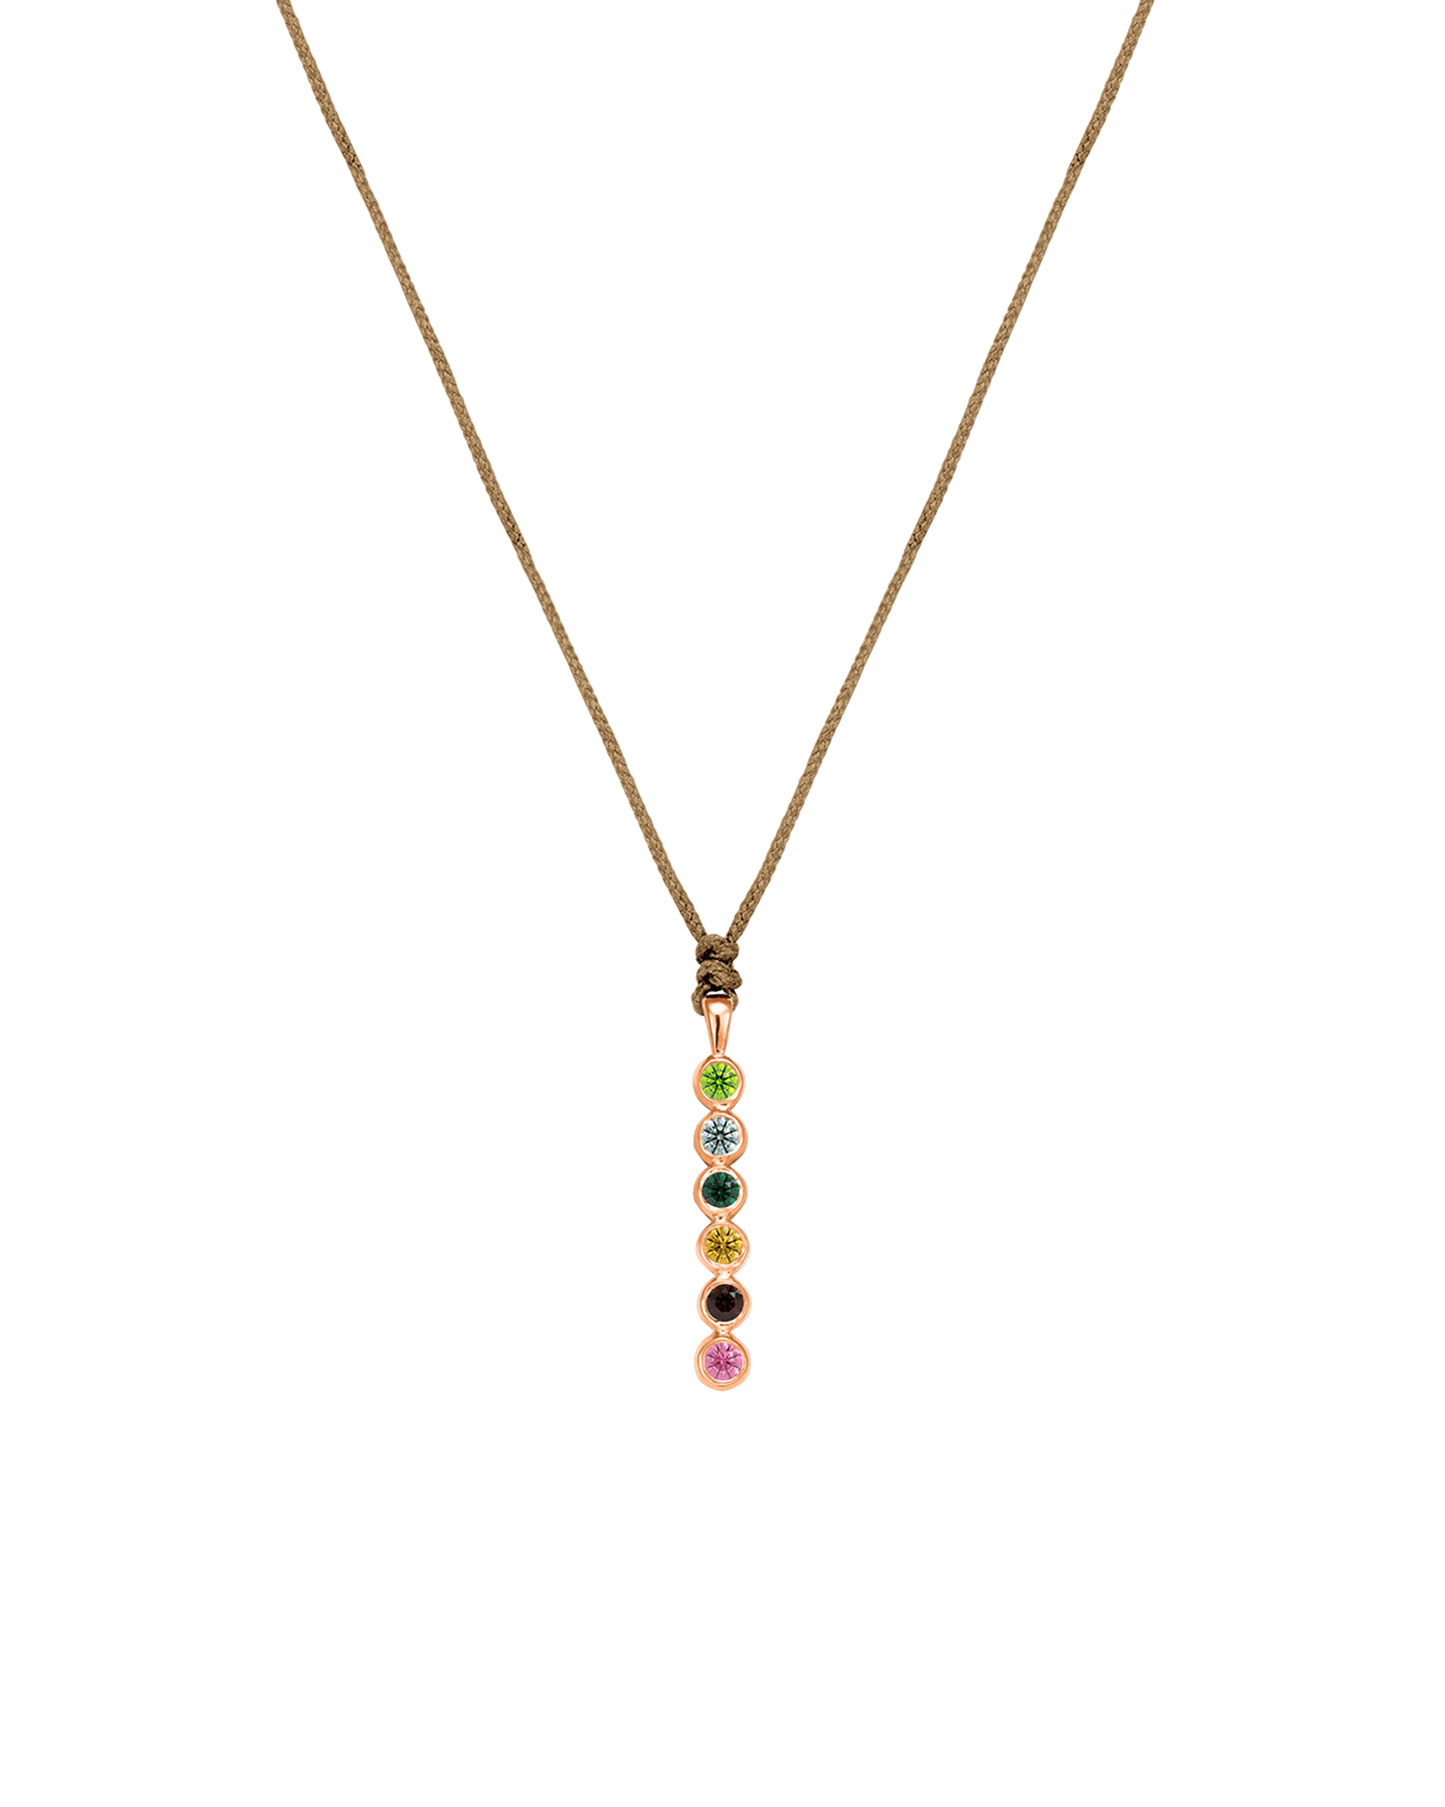 The Birthstones Bar Necklace - 14K Rose Gold Necklaces 14K Solid Gold Camel 2 